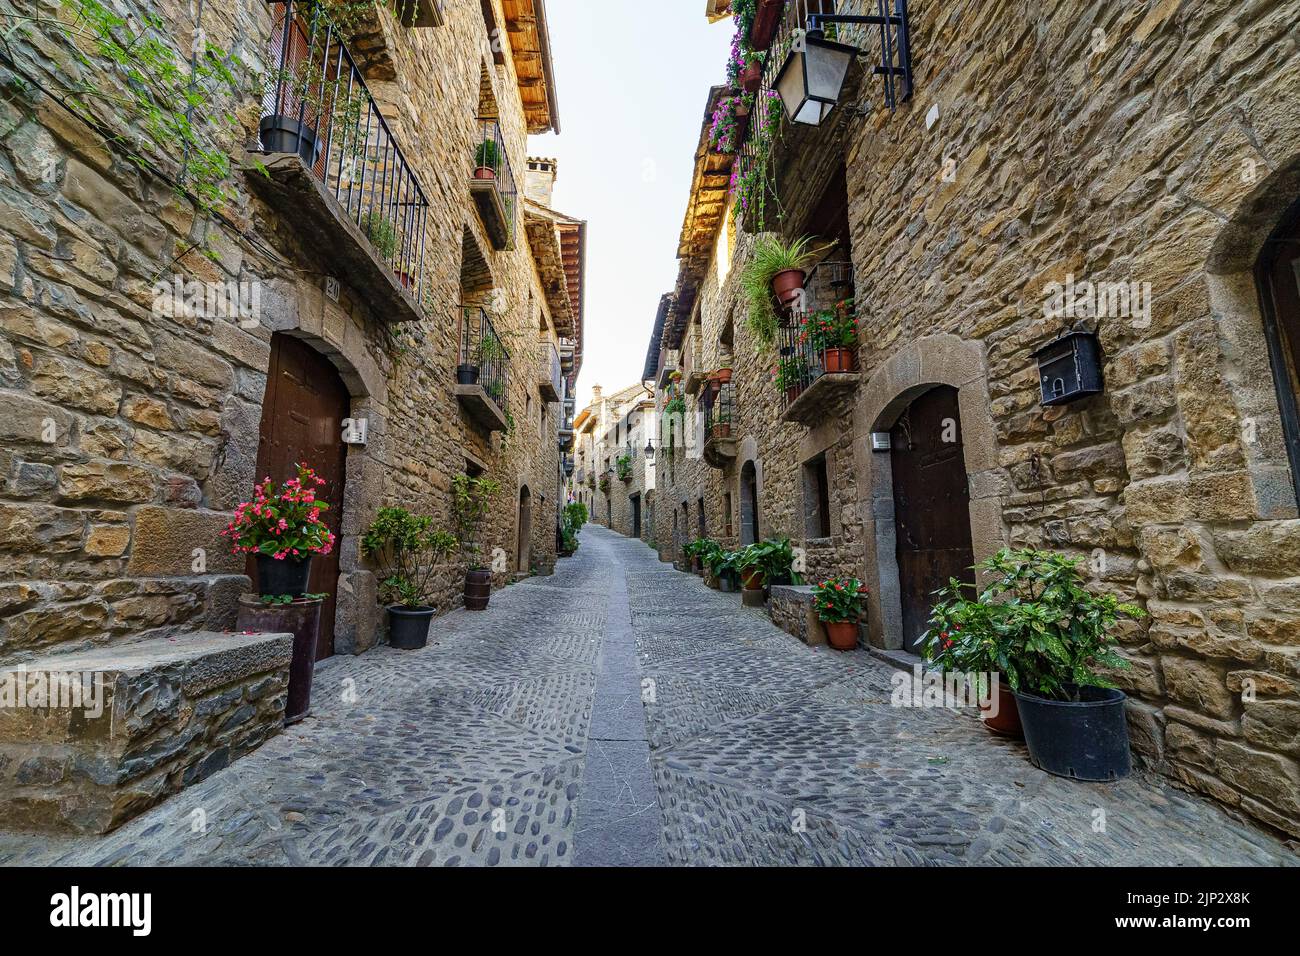 Straße einer alten mittelalterlichen Stadt mit Steinhäusern und Kopfsteinpflasterböden, Straßenlampen und einer Atmosphäre vergangener Zeiten. Ainsa, Spanien. Stockfoto